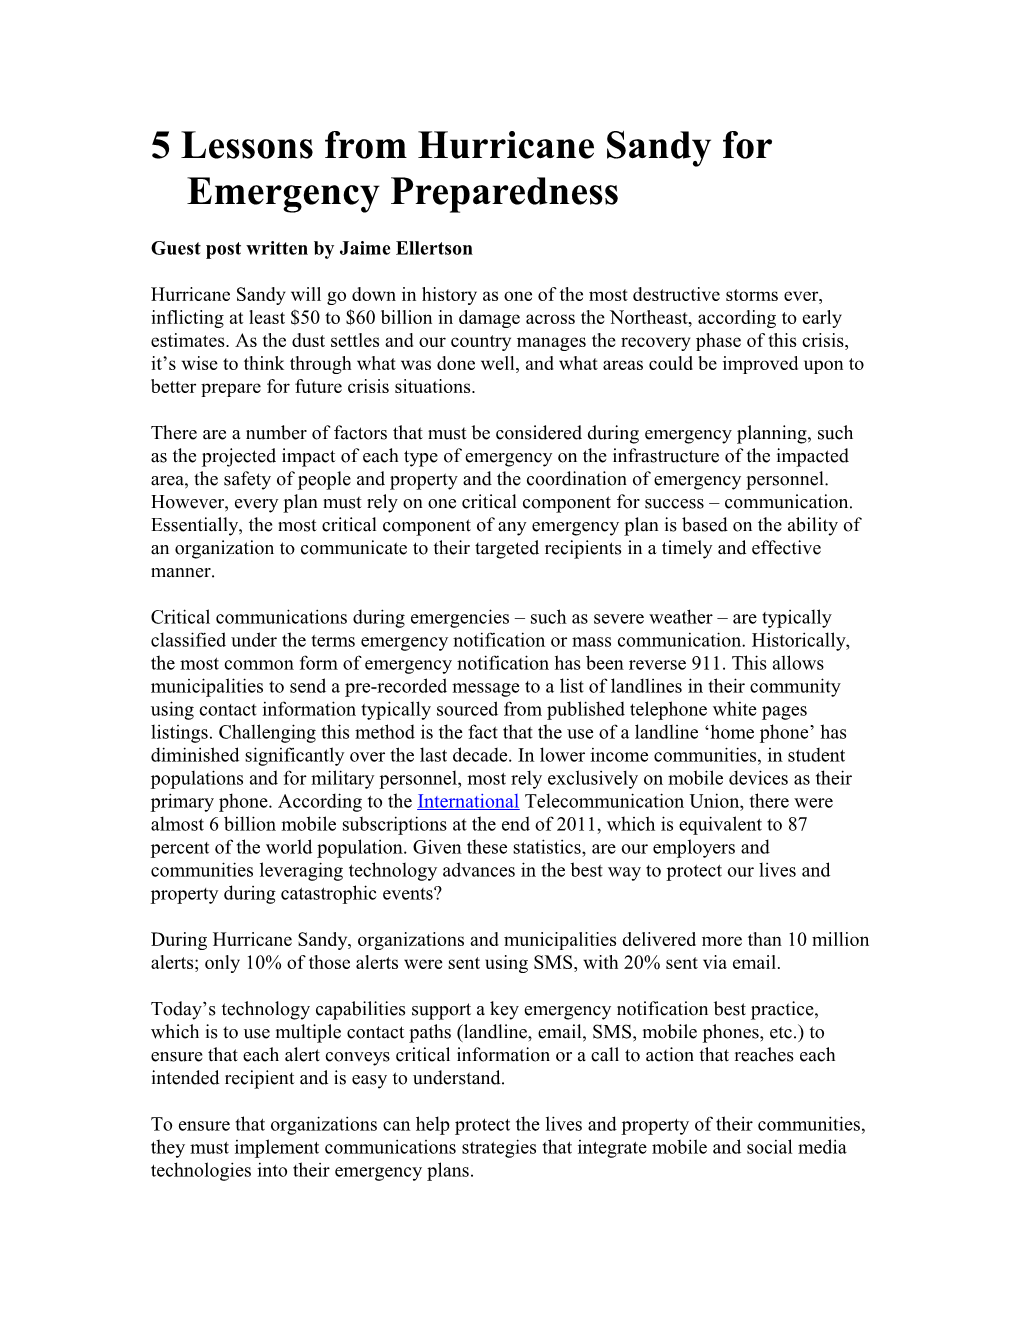 5 Lessons from Hurricane Sandy for Emergency Preparedness